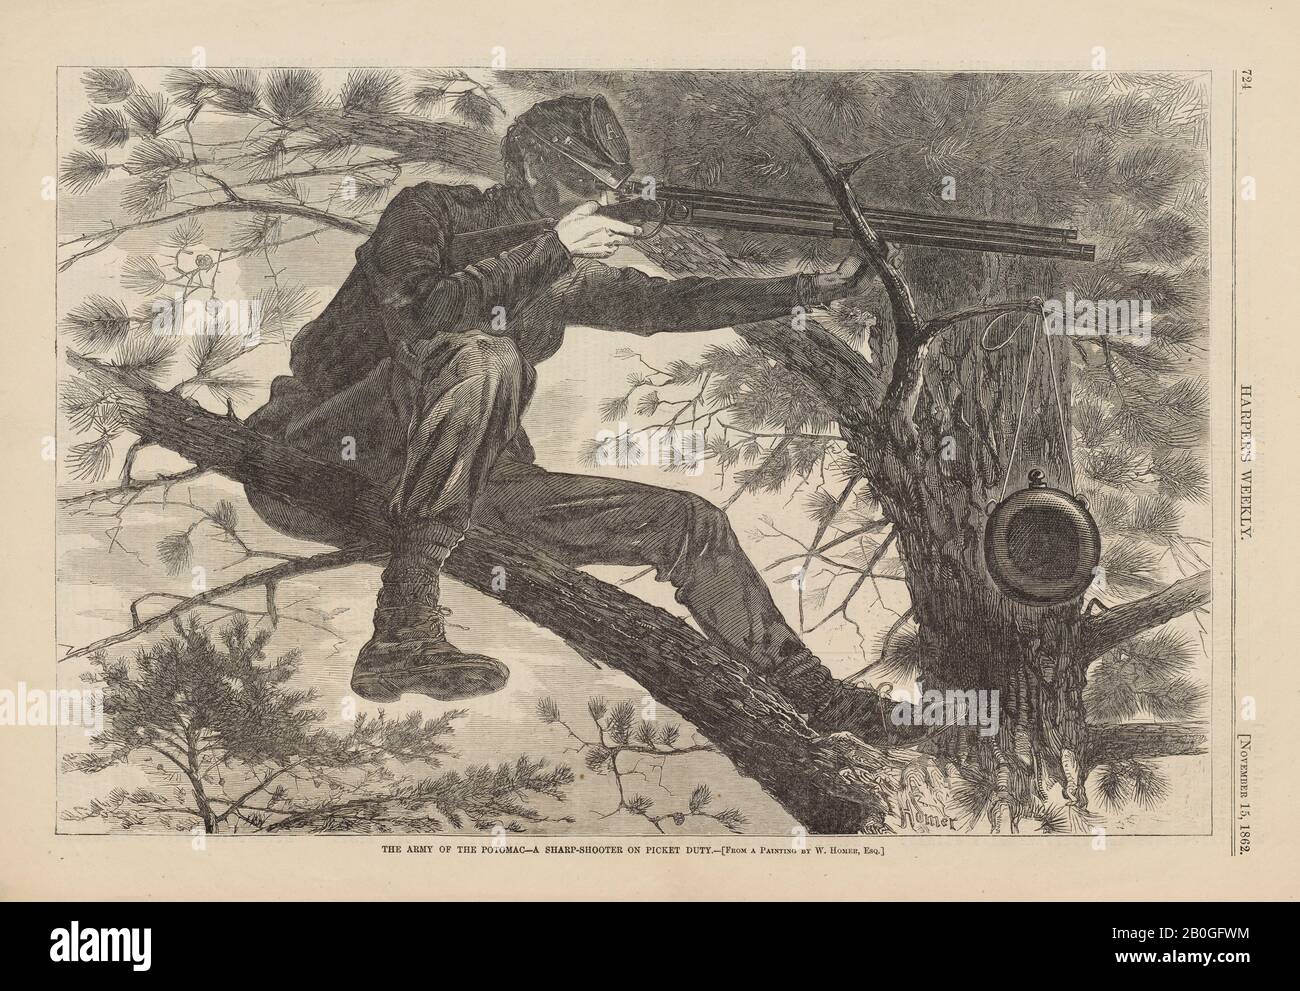 Dopo Winslow Homer, americano, 1836-1910, l'esercito del Potomac - UN Sharp-Shooter su Picket Duty, Da Harper's Weekly, vol. 6, 15 Nov. 1862, incisione del legno su carta da giornale, immagine: 9 1/4 x 13 3/4 in. (23,5 x 35 cm Foto Stock